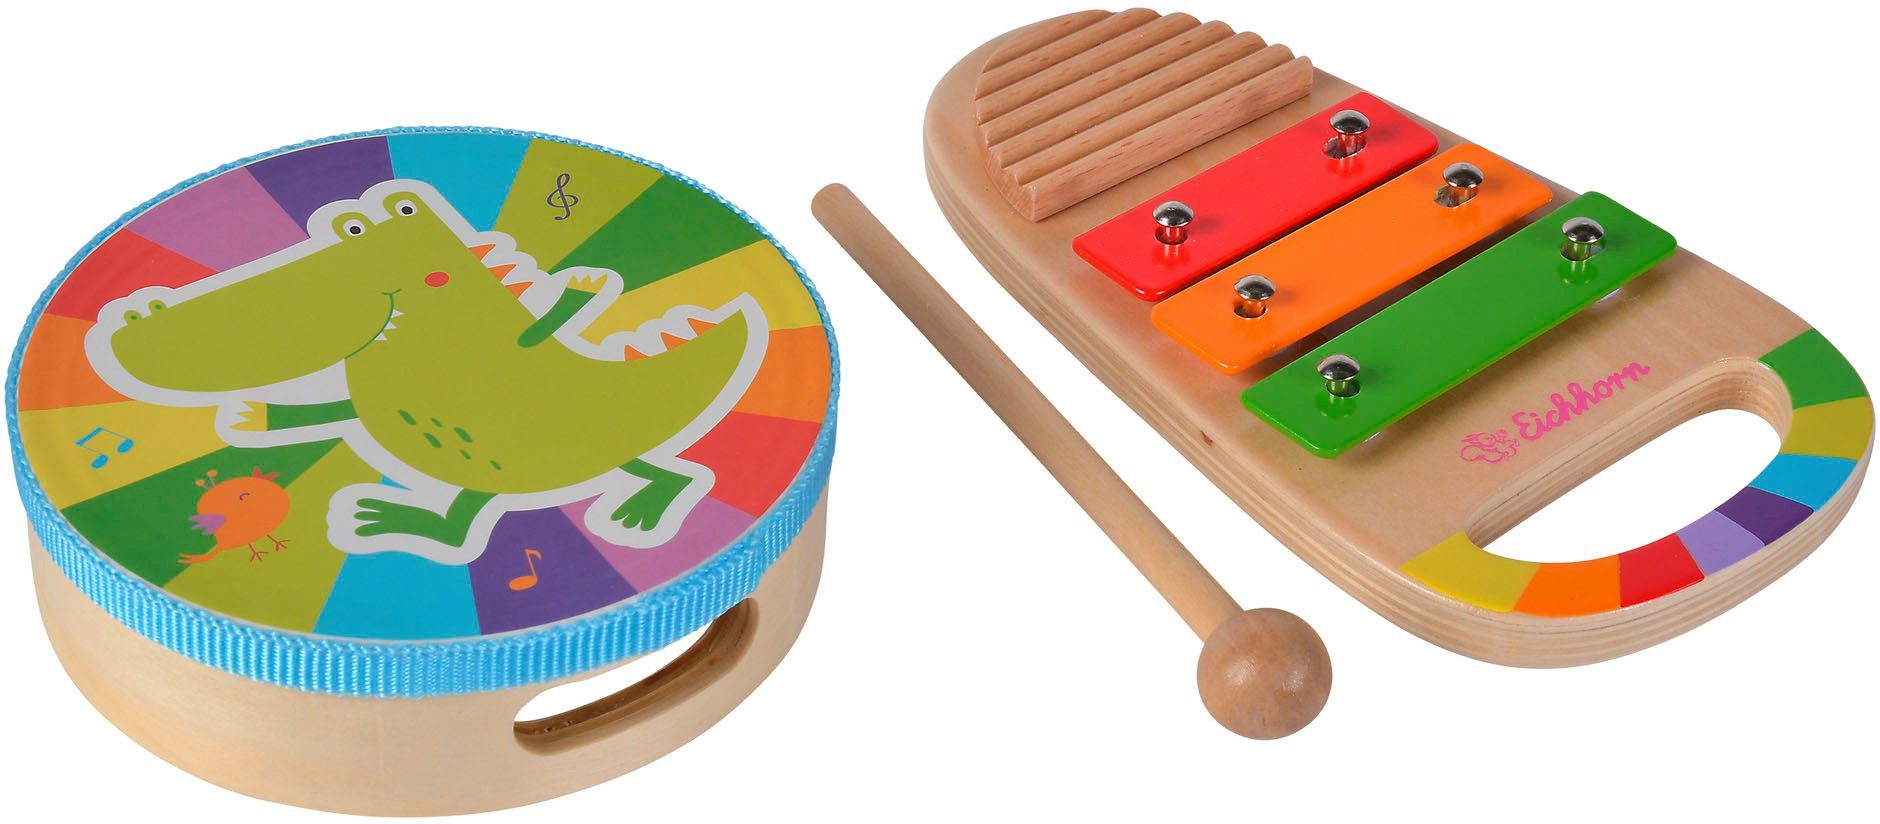 Eichhorn Spielzeug-Musikinstrument Musik Set Trommel und Xylo